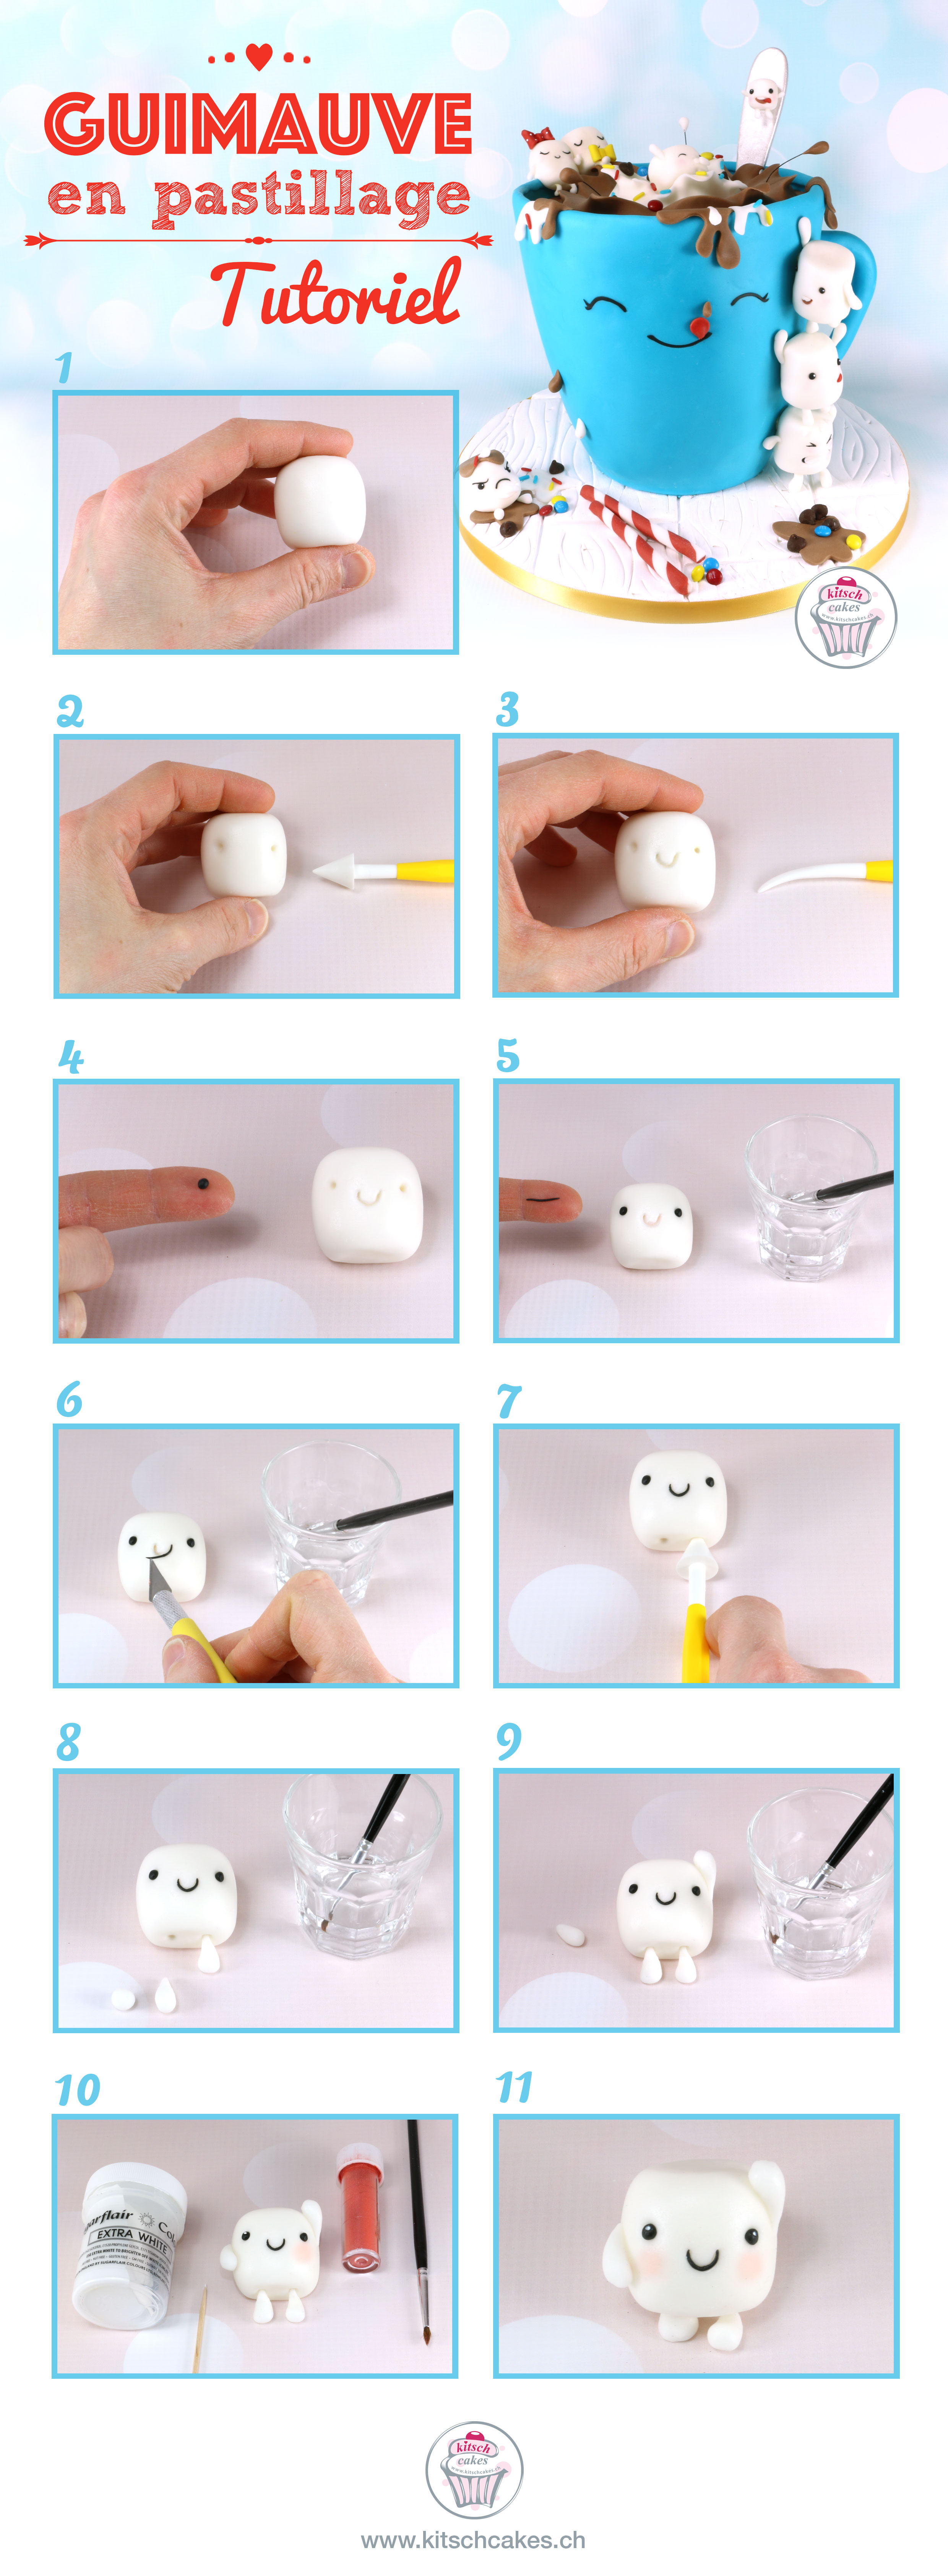 Guimauve (marshmallow) en pastillage (gumpaste) - tutoriel